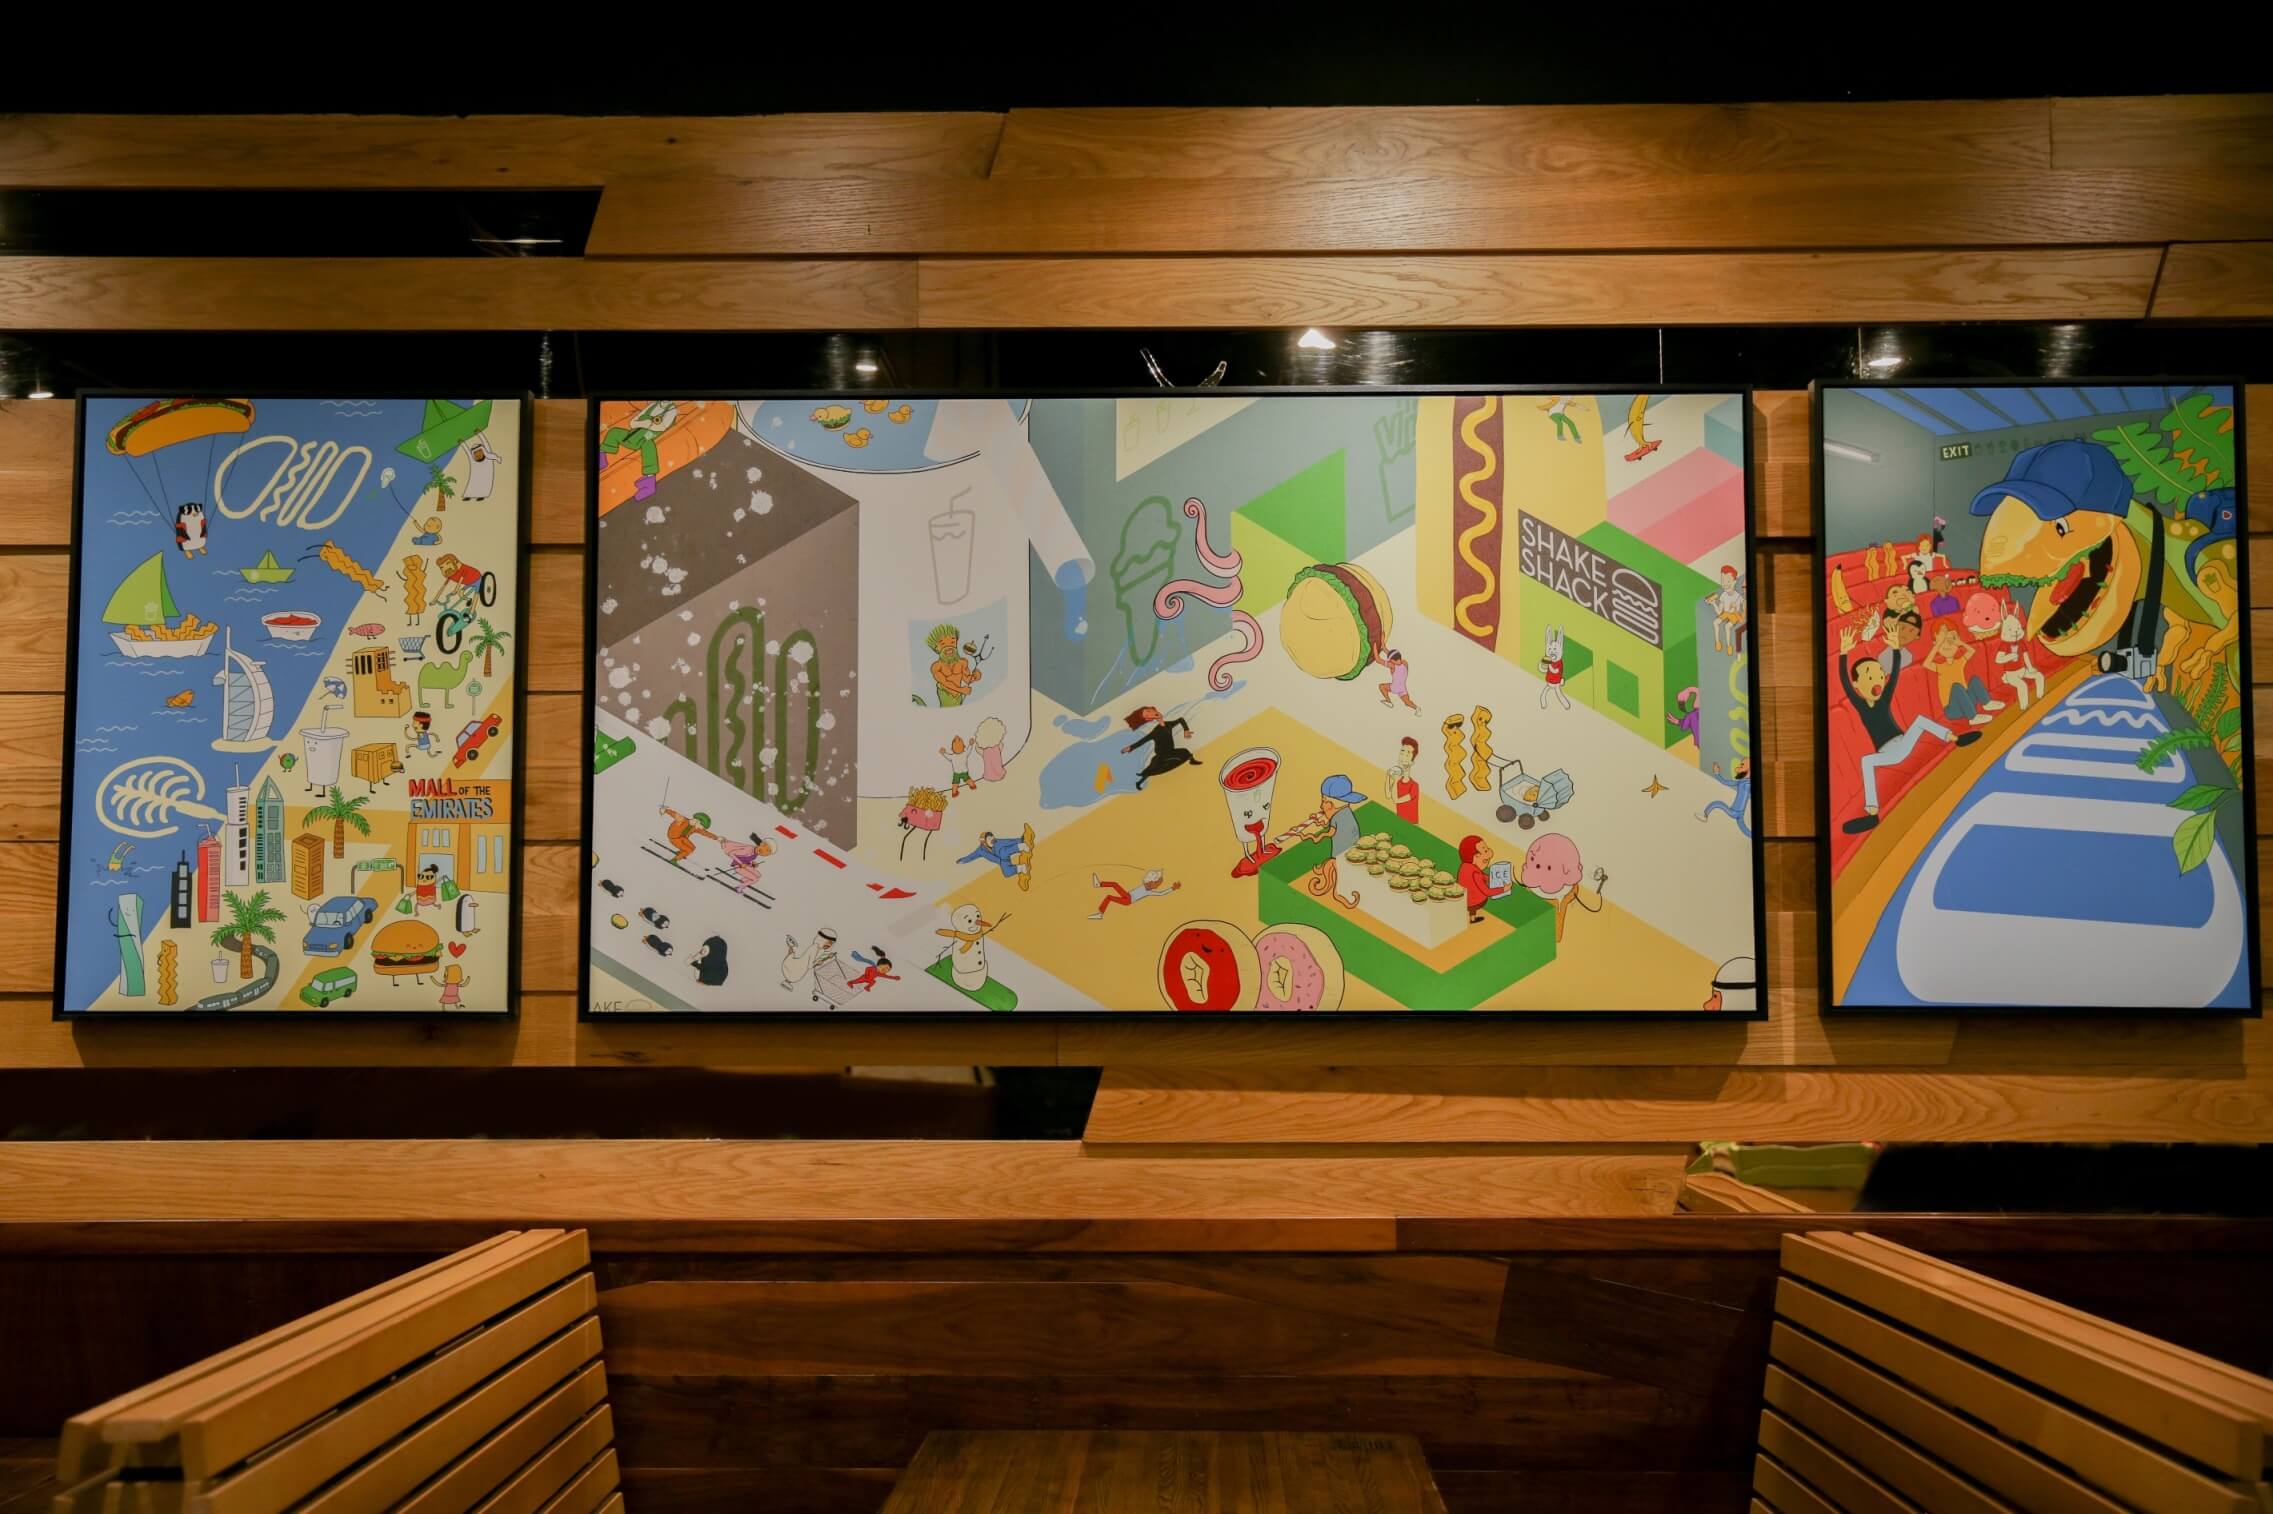 مطعم شيك شاك يتعاون مع فنانيين تشكيليين محليين لتحويل فروعه الى أماكن إبداعية